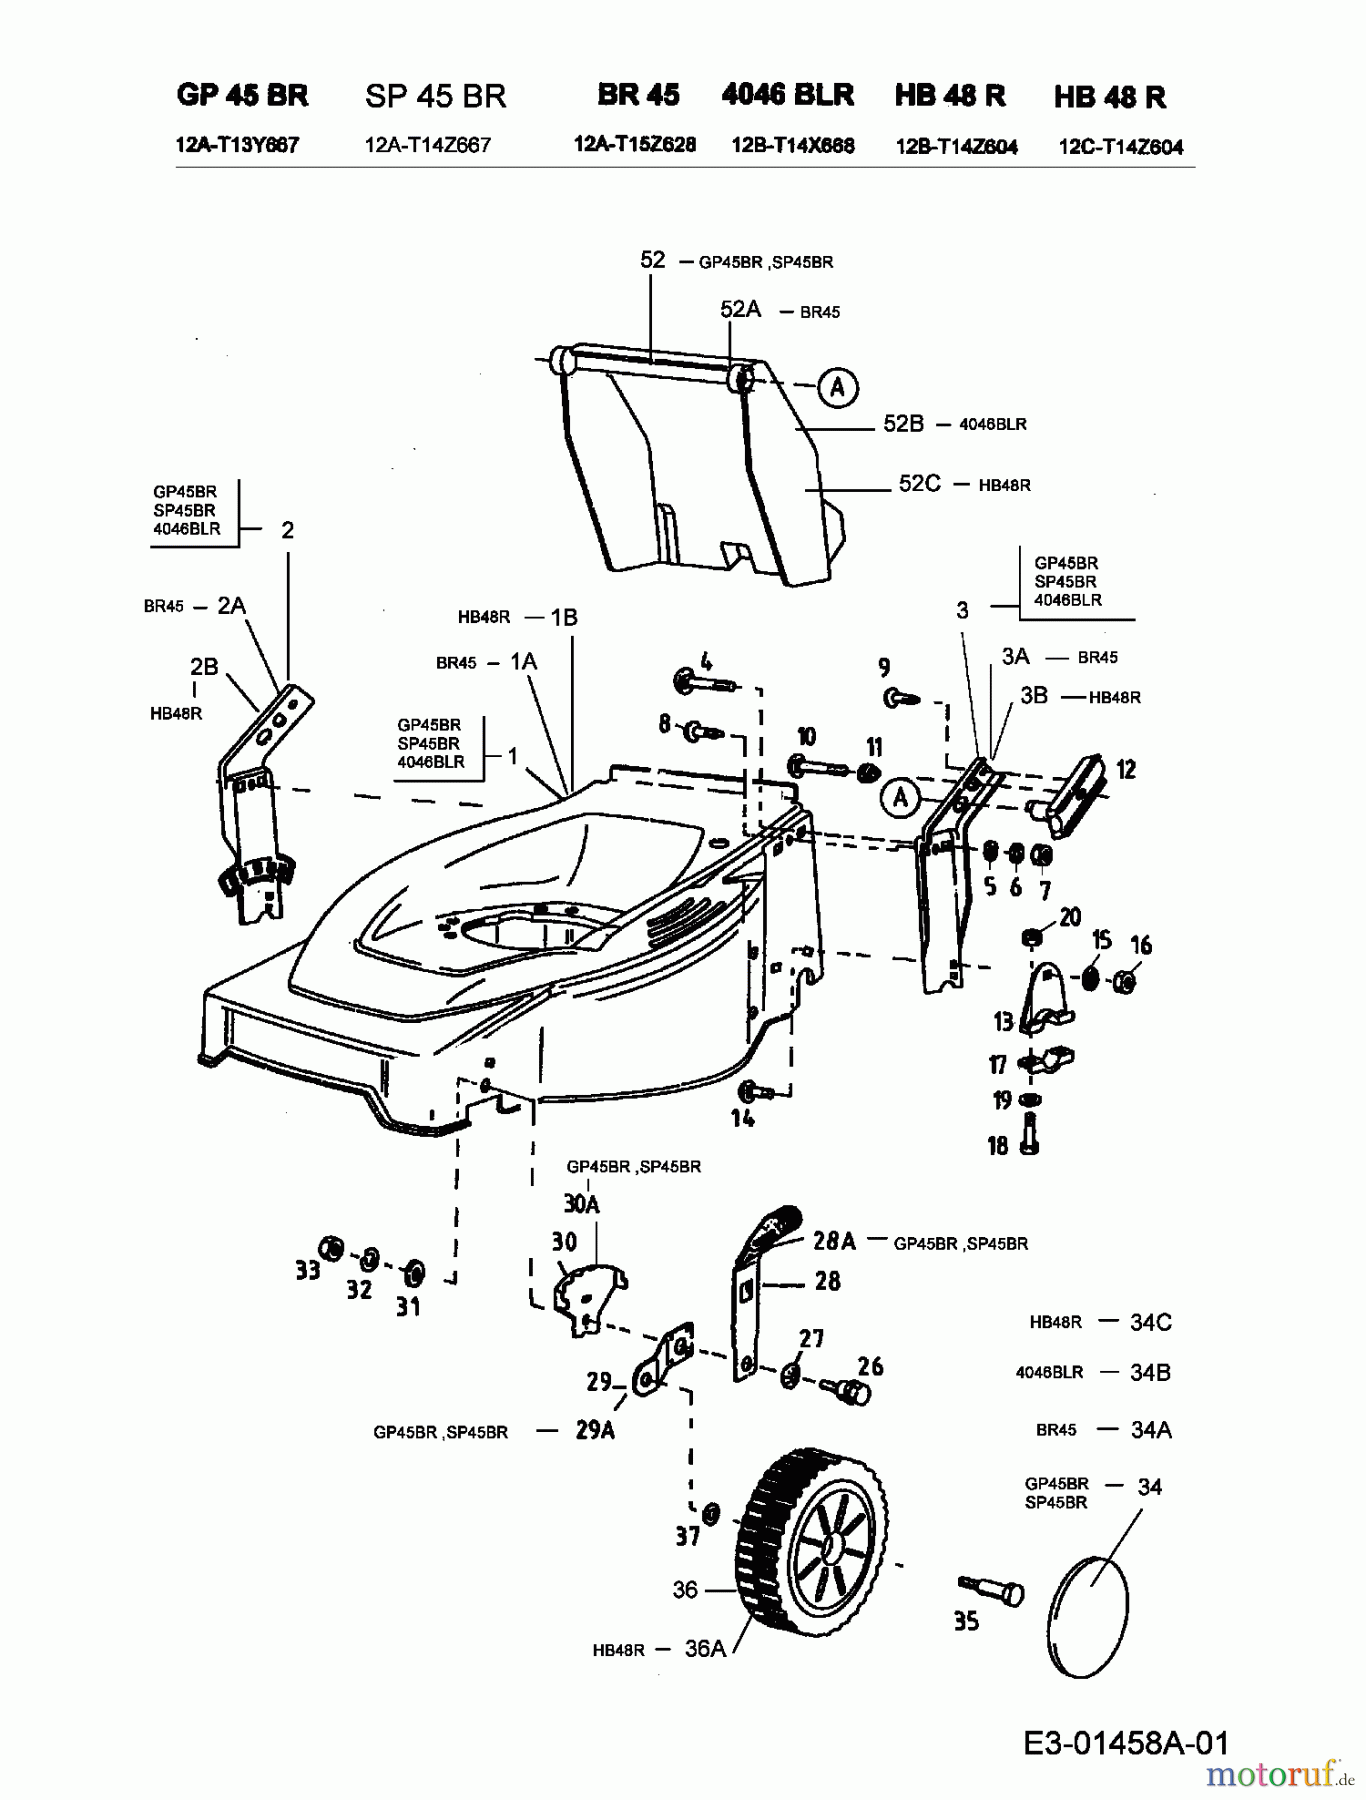  Genius Pro Motormäher mit Antrieb GP 45 BR 12A-T13Y667  (2000) Räder, Schnitthöhenverstellung